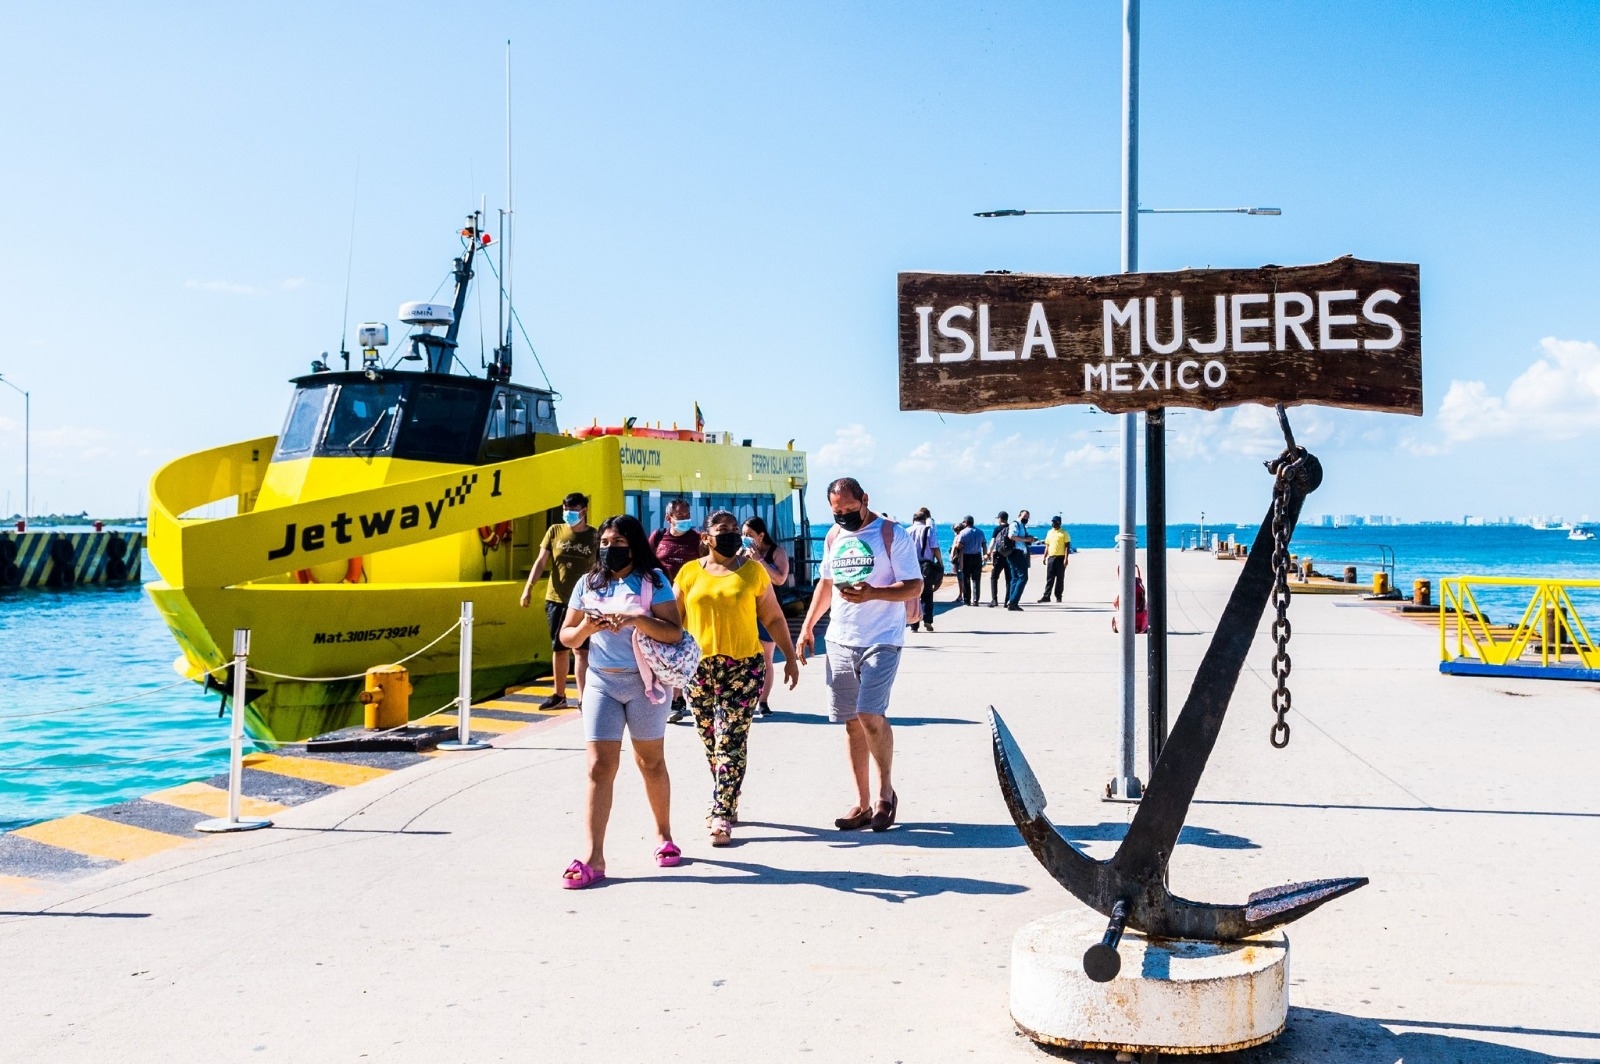 Jetway se despide de la ruta Puerto Juárez-Isla Mujeres tras dos años y medio de competencia